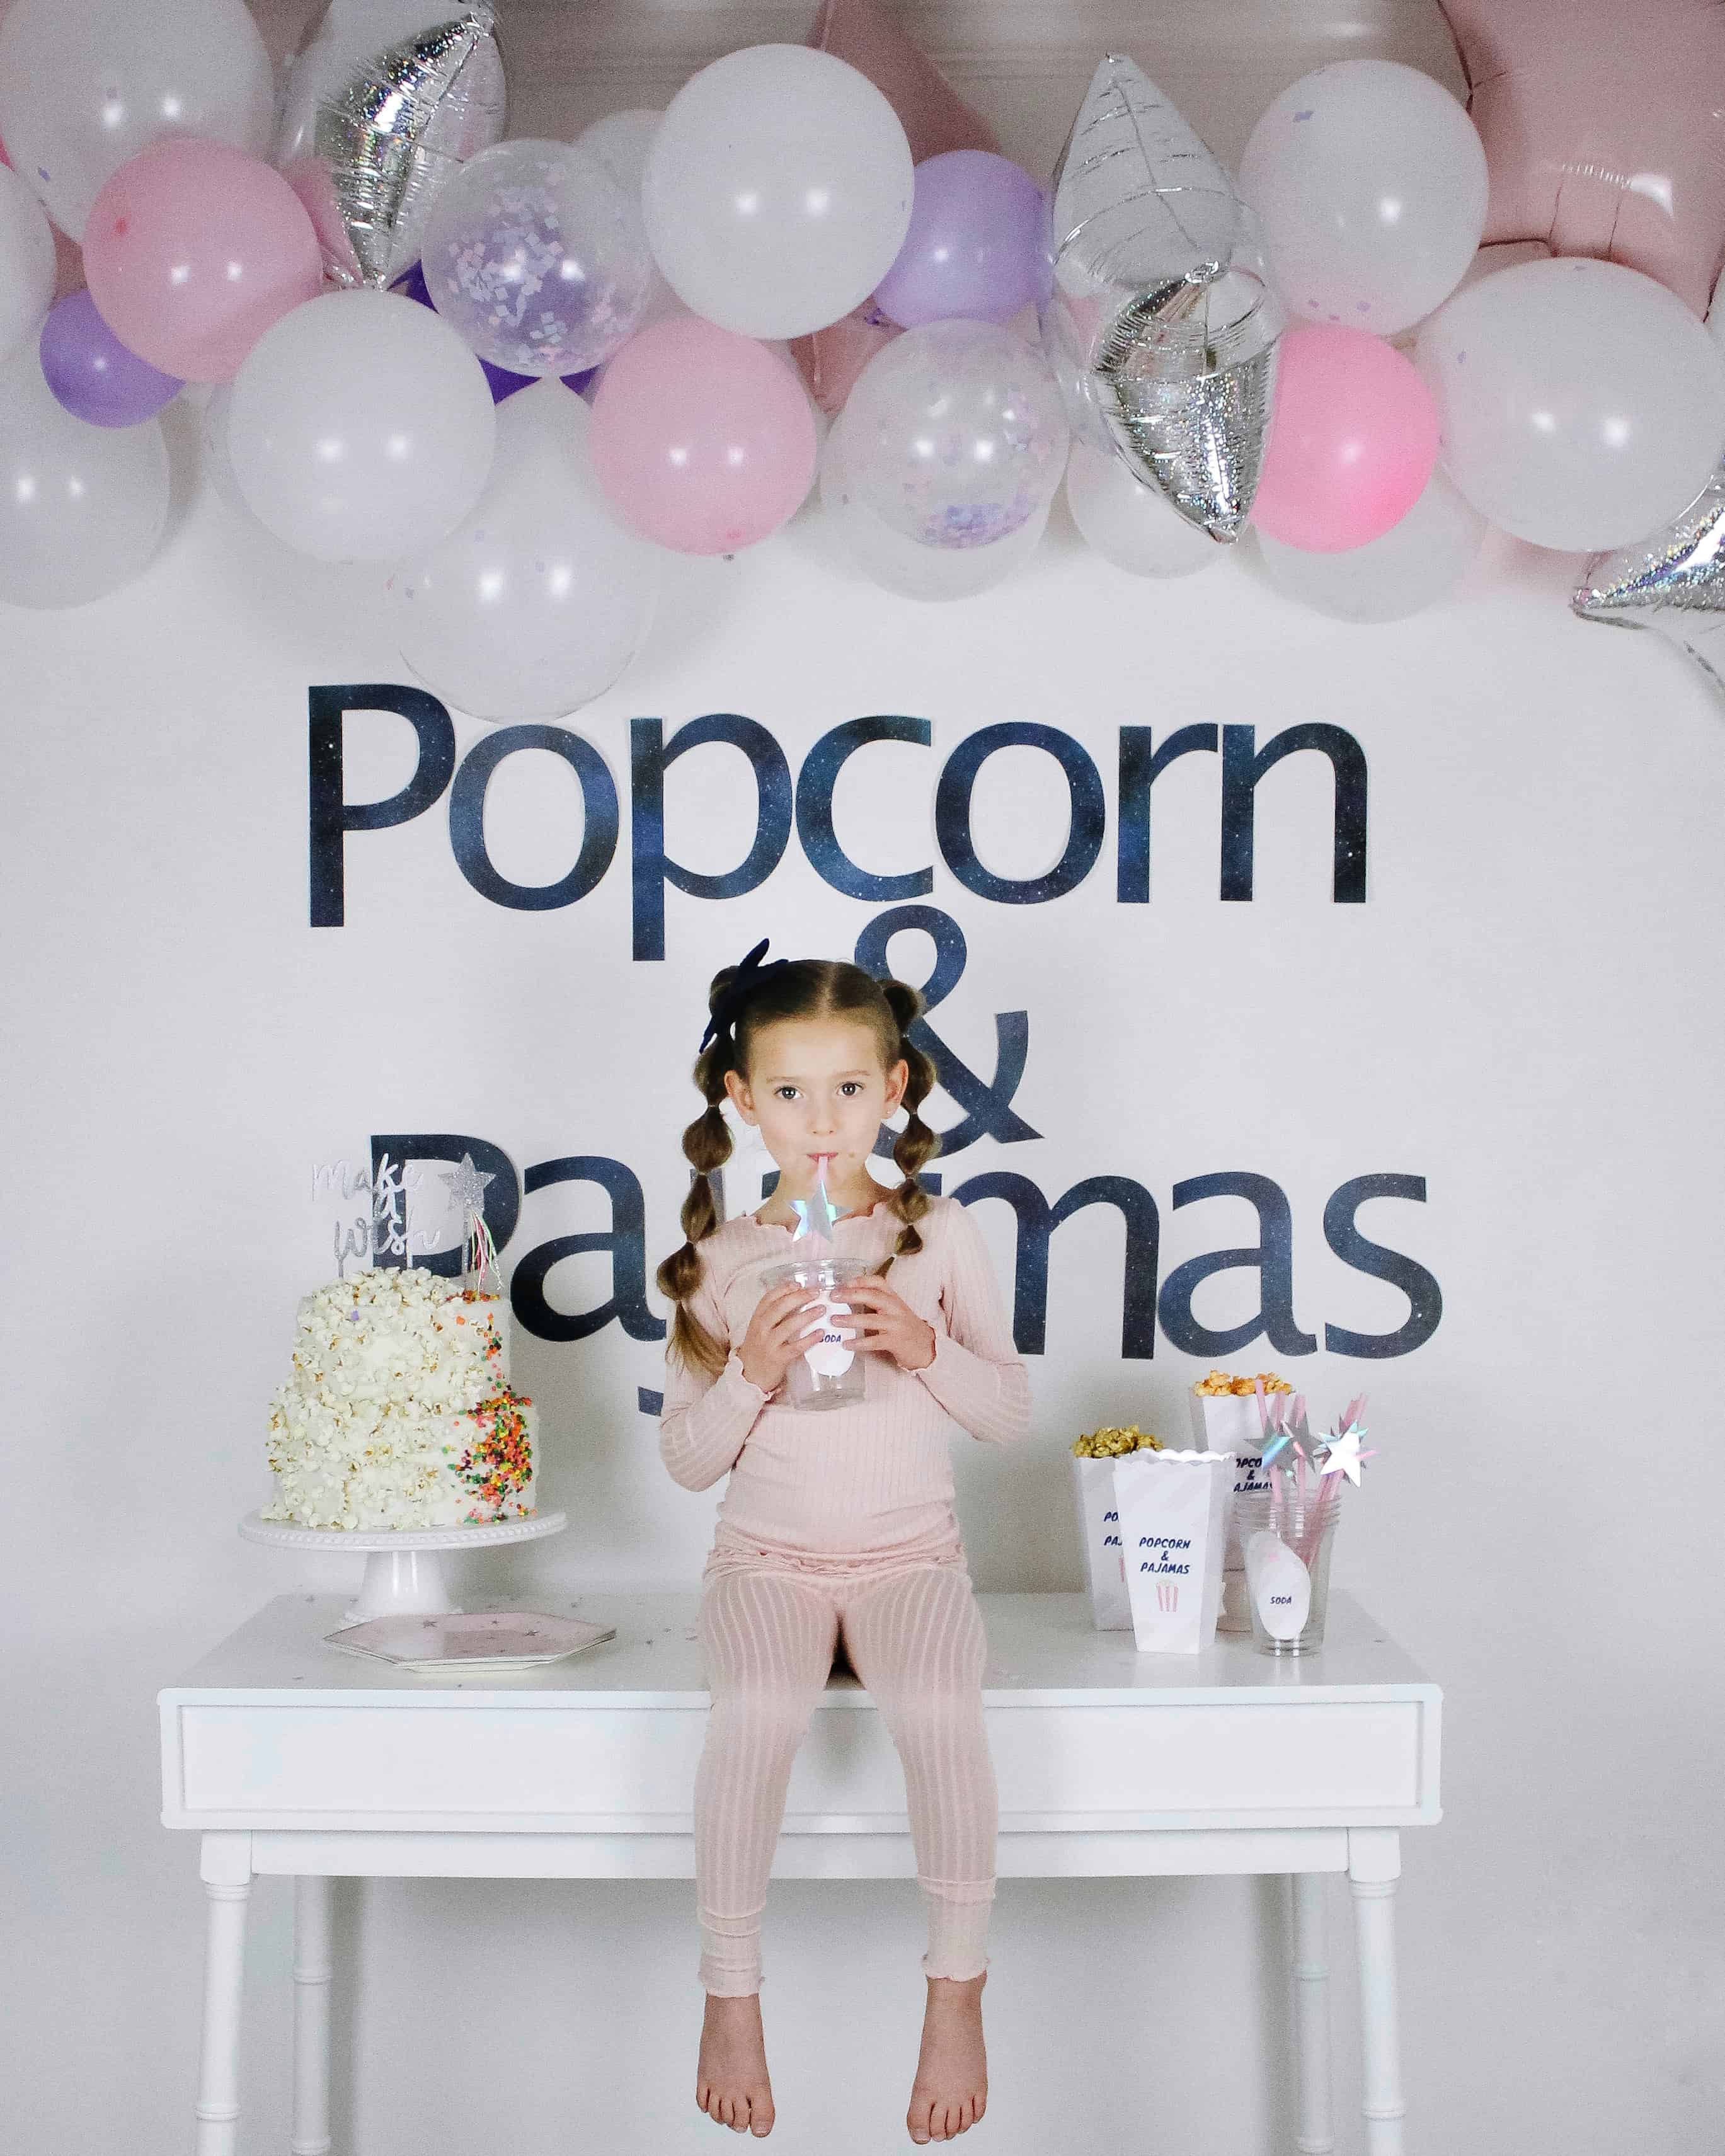 Popcorn and pajamas birthday party